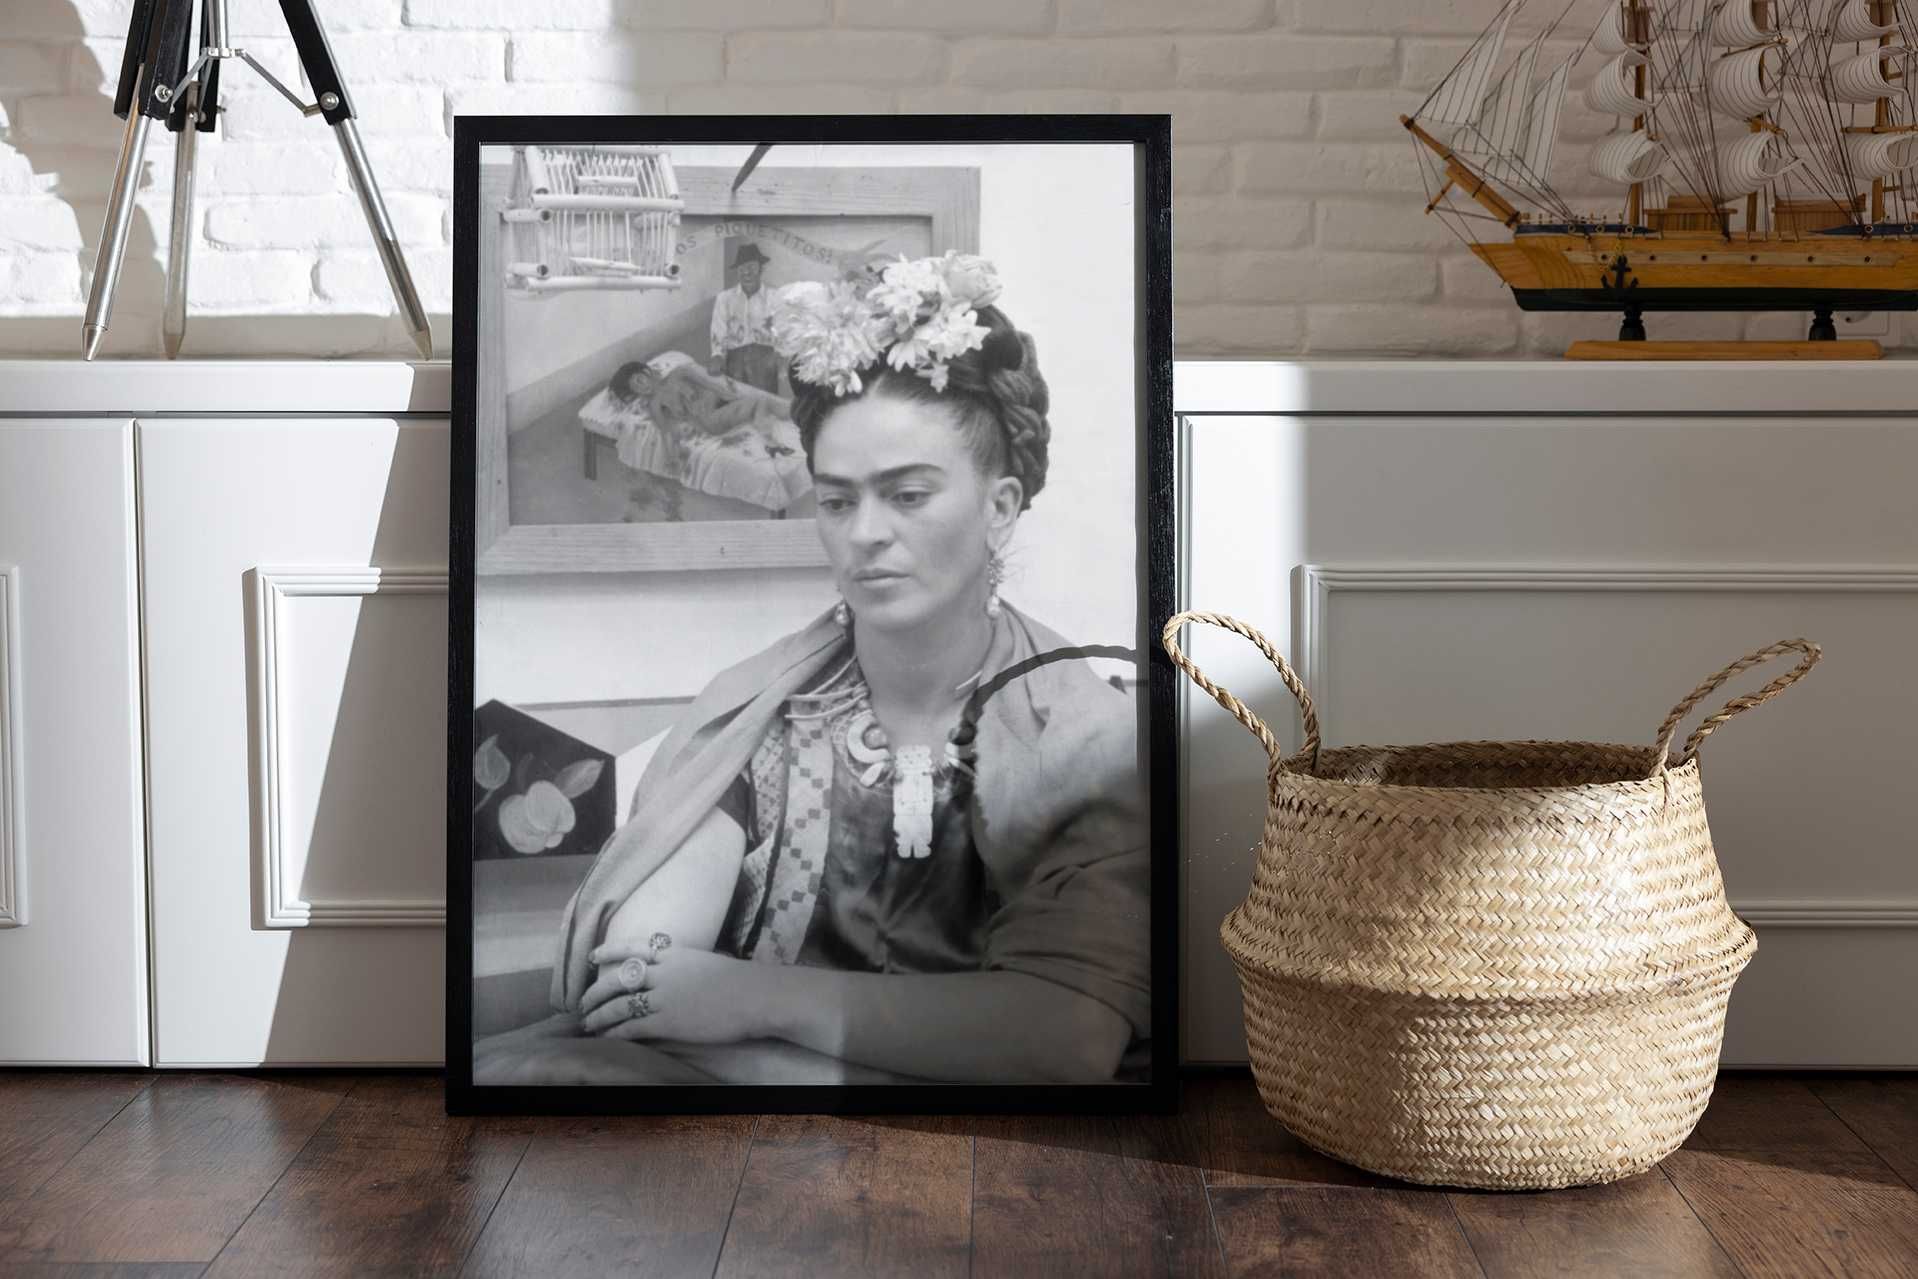 Plakat A3 piękny portret Frida Kahlo